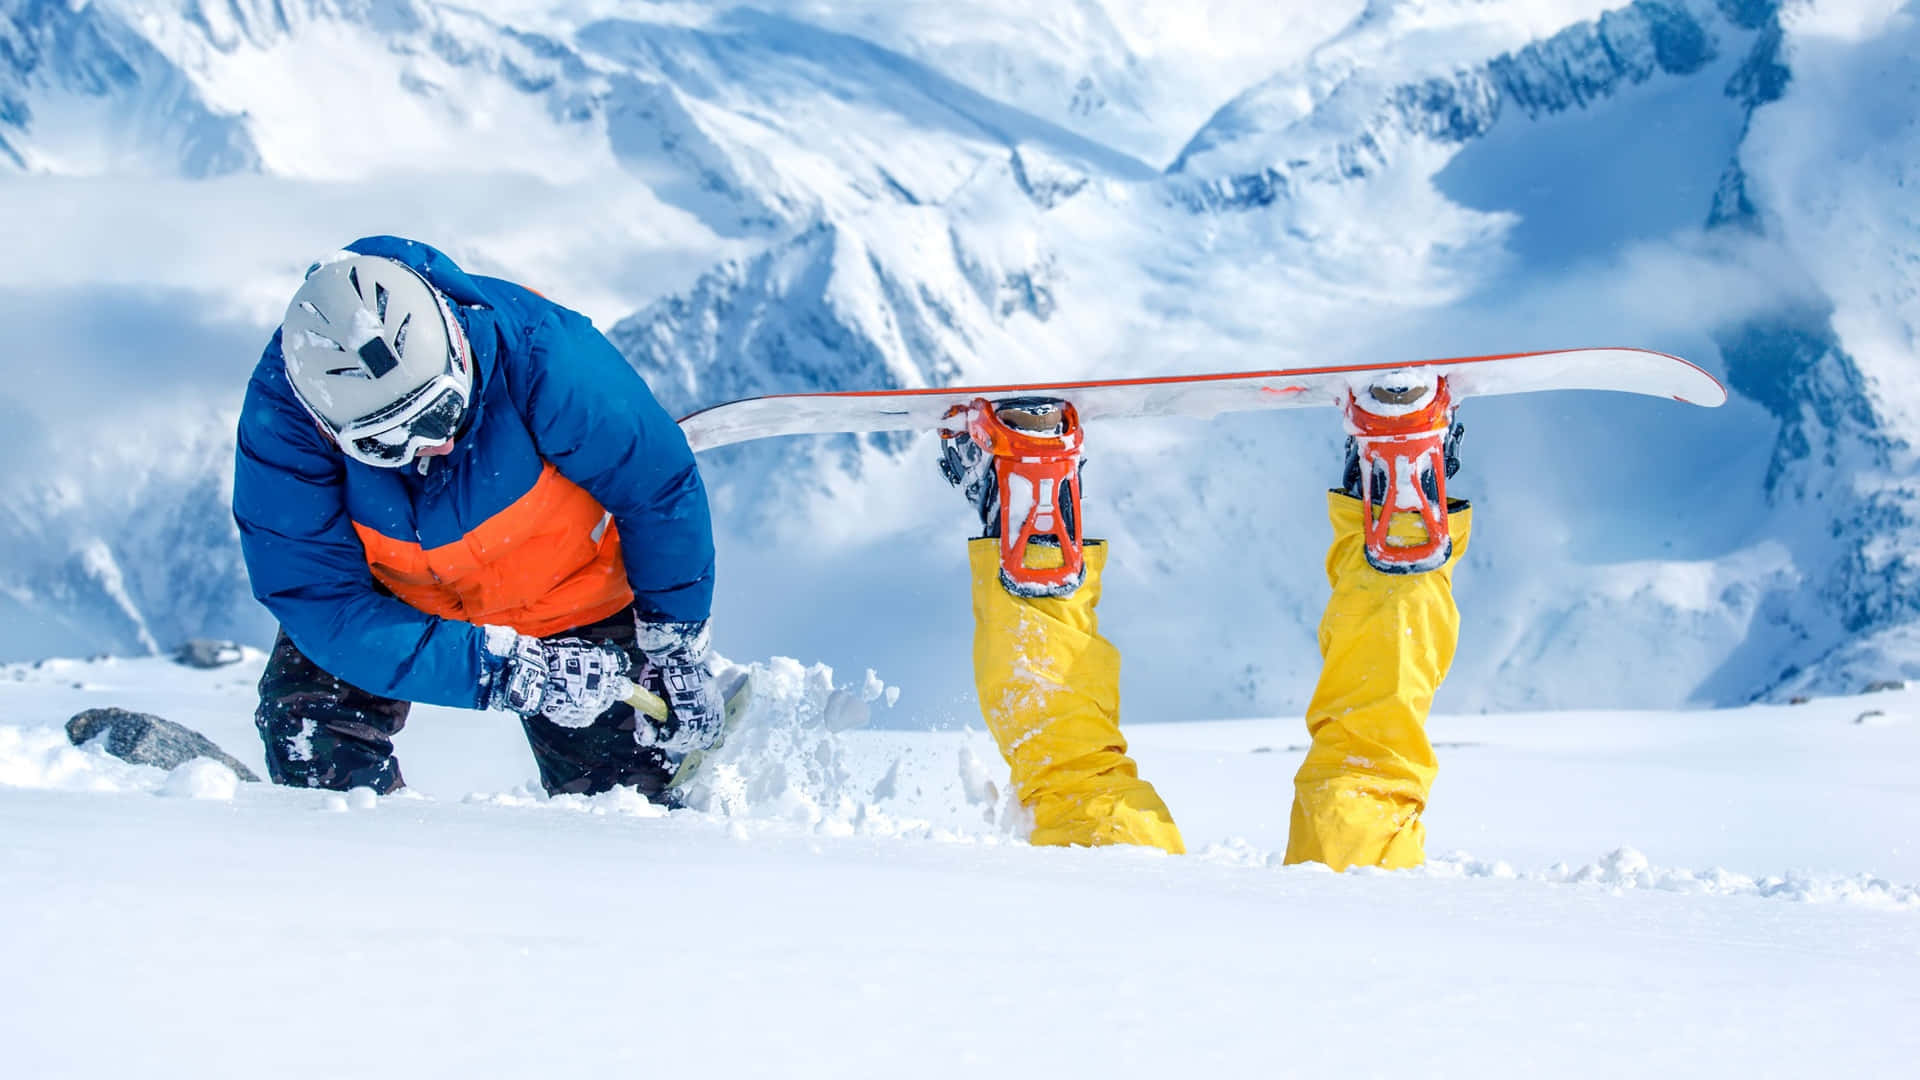 Imagendivertida De Un Snowboarder Con Los Pies Asomando En La Nieve.